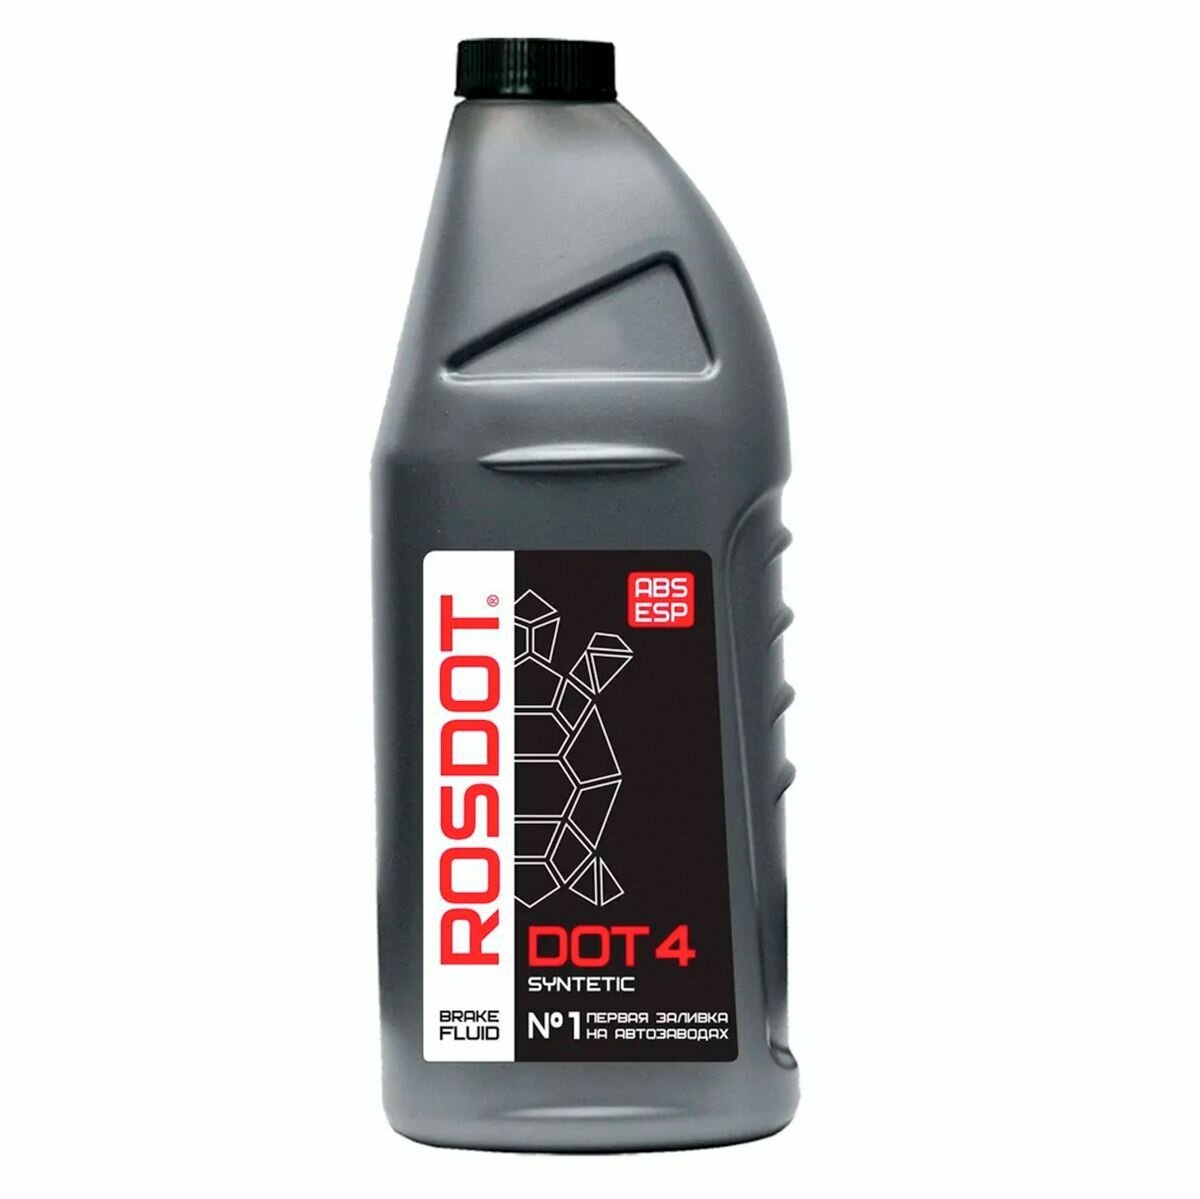 Тормозная жидкость ROSDOT DOT-4 Synthetic, 910, 1 шт